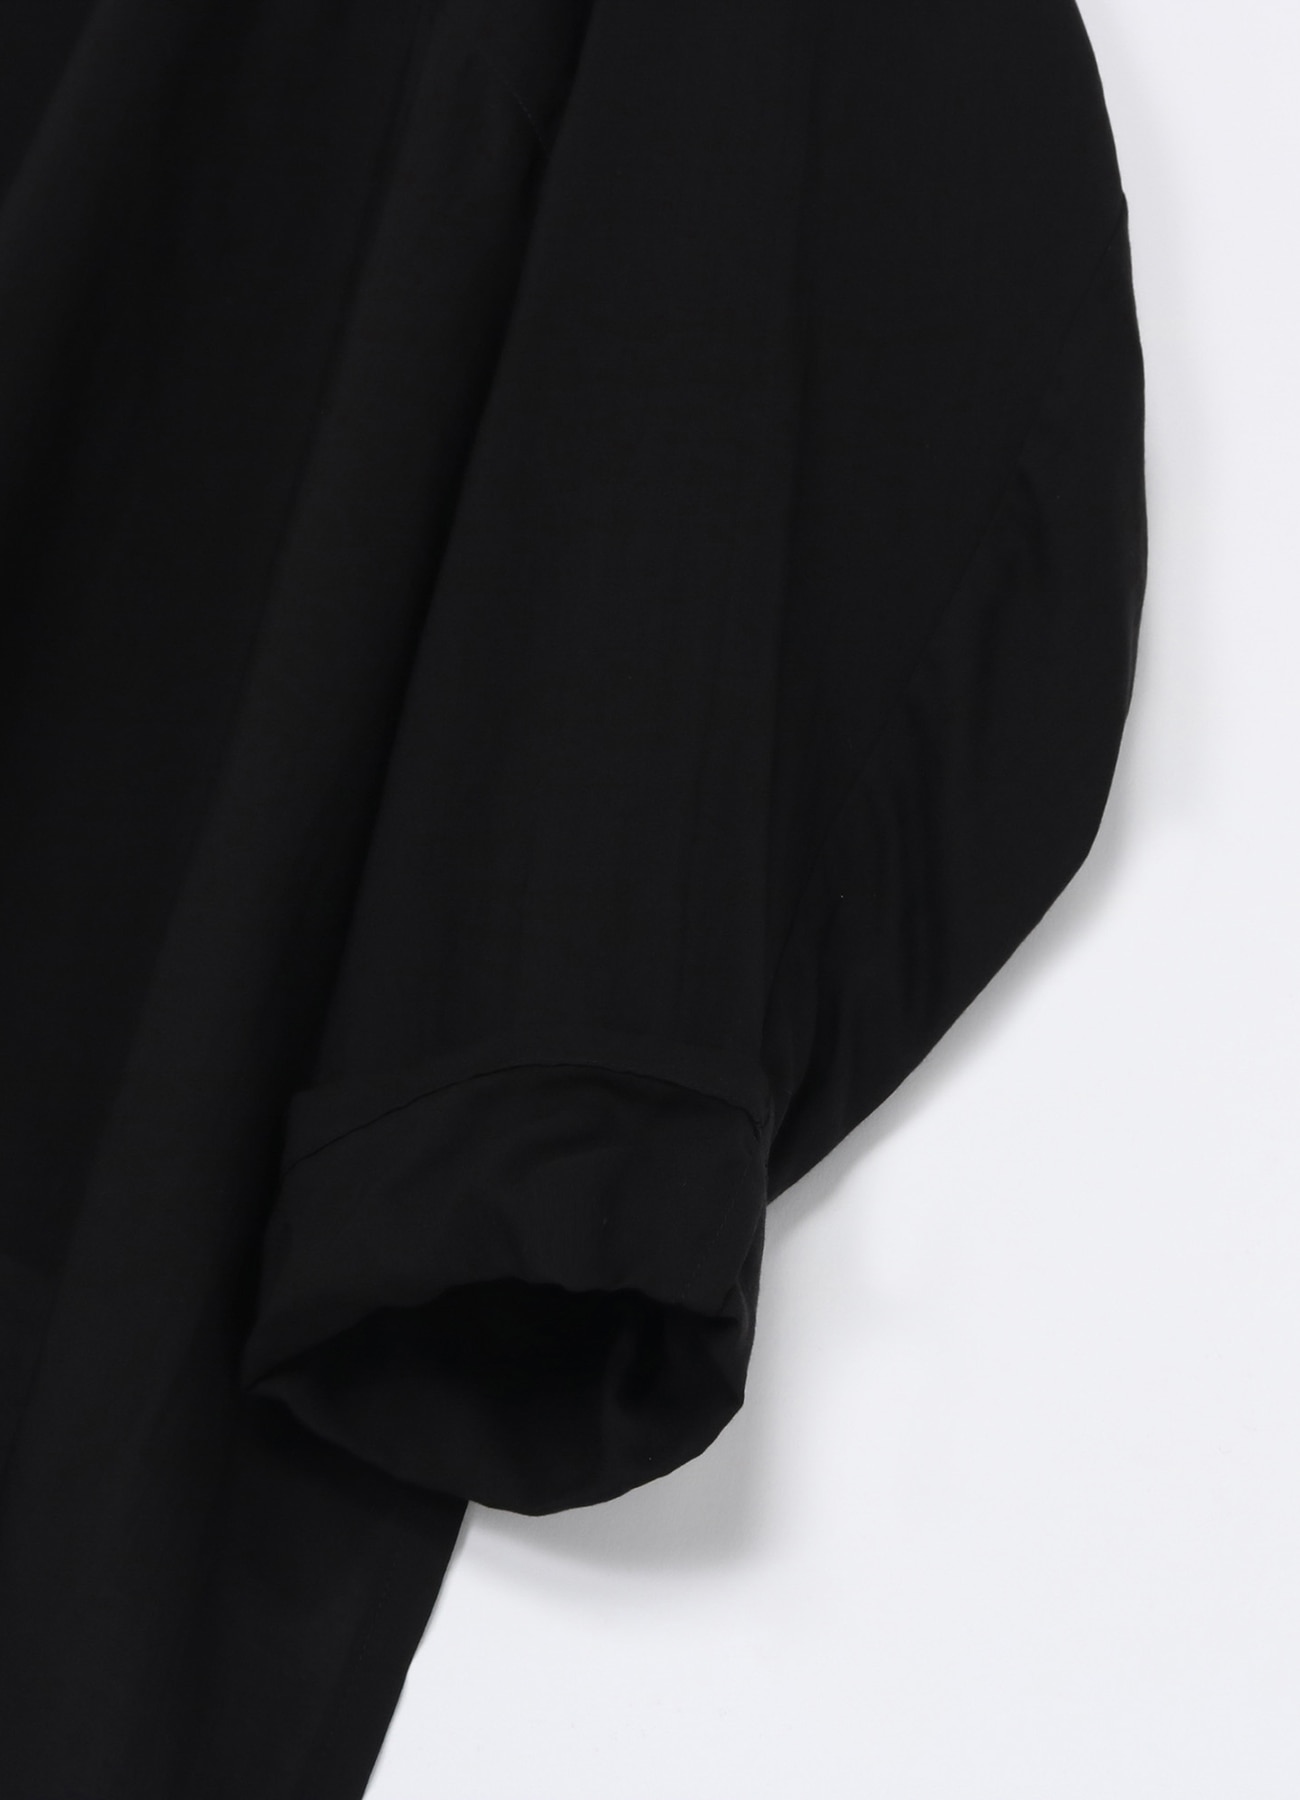 WILDSIDE × Kié Einzelgänger Pullover Shirt(FREE SIZE BLACK): Kie ...